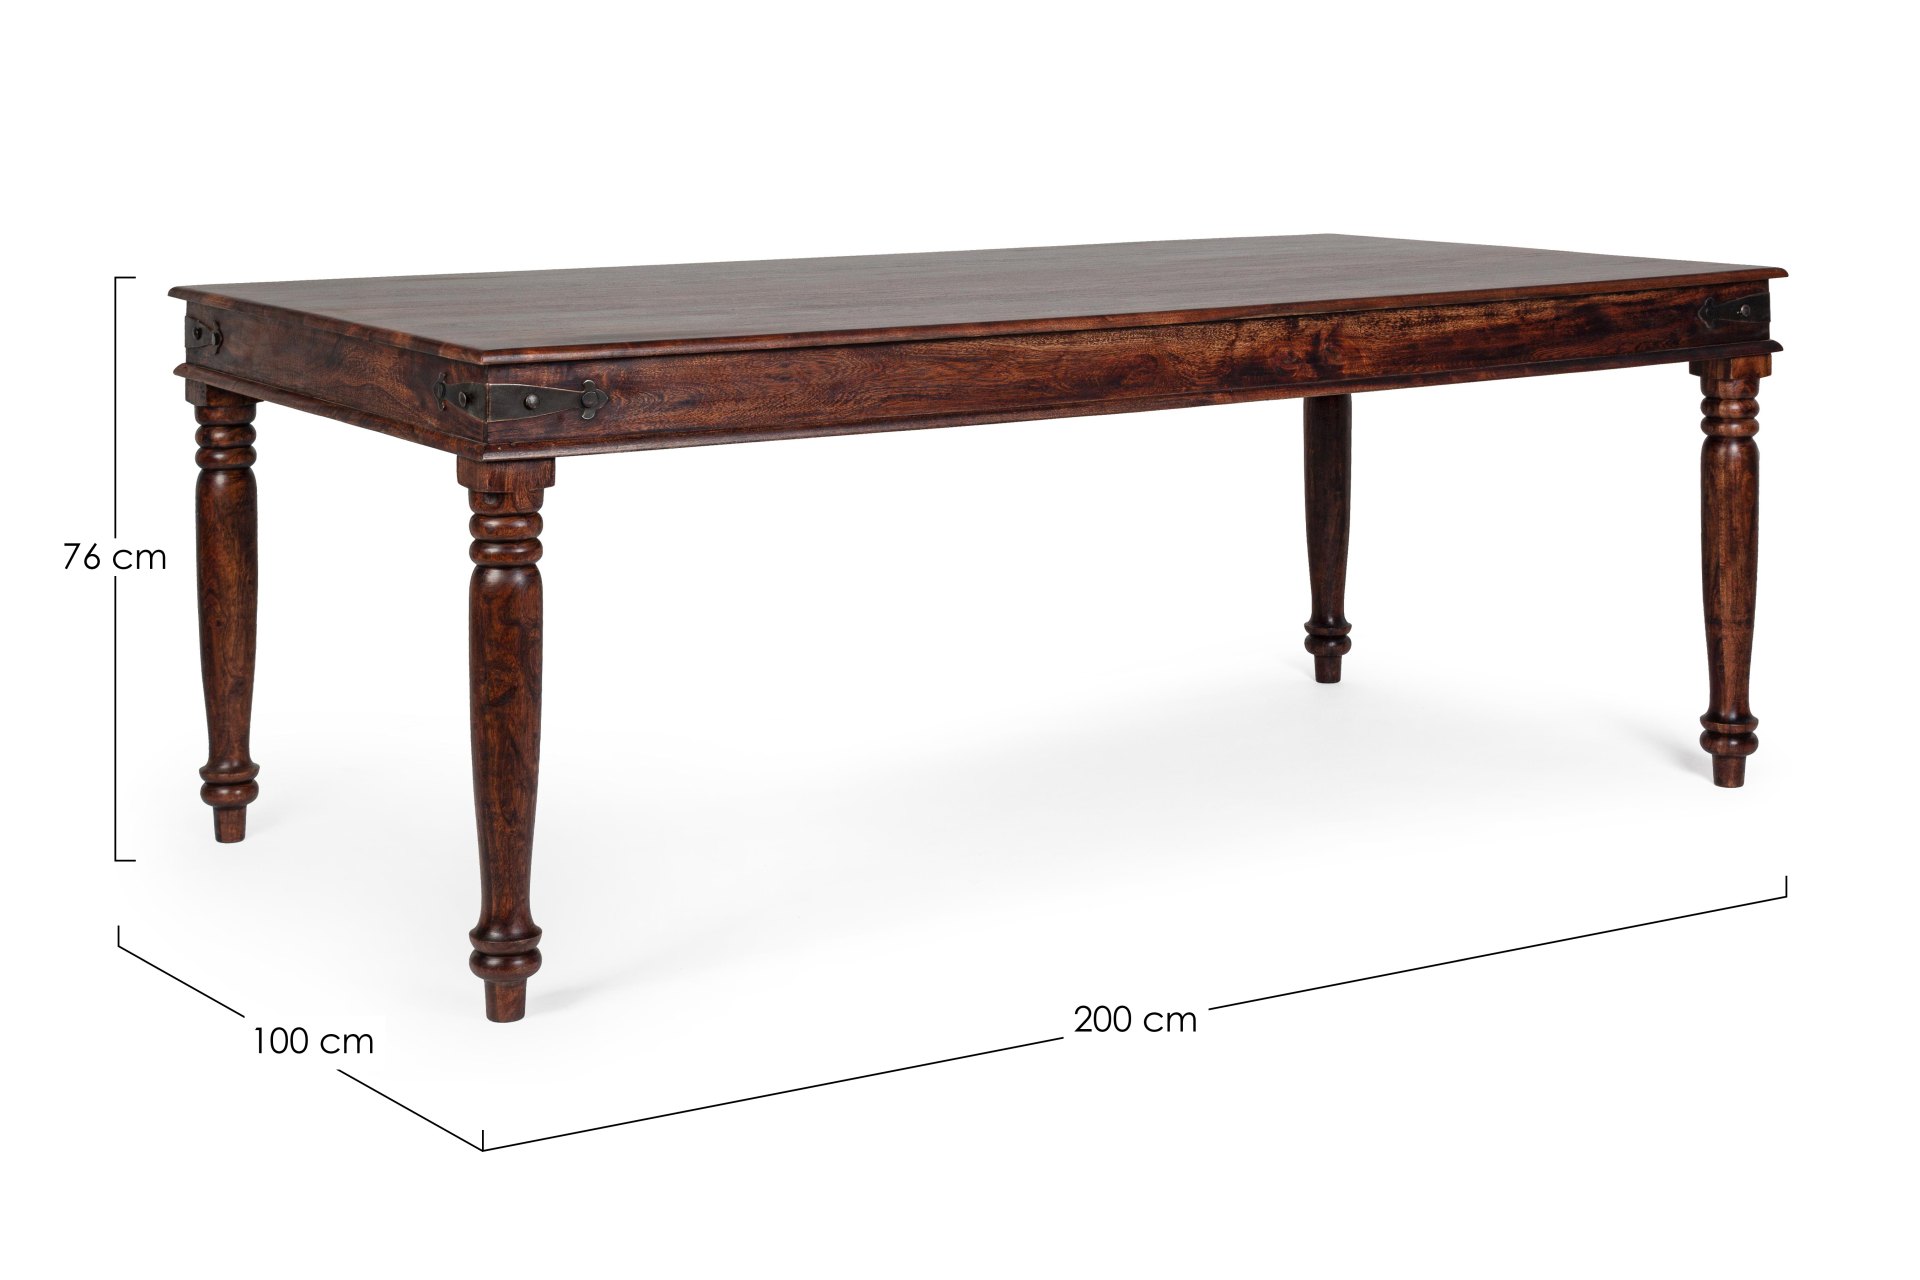 Der Esstisch Jaipur überzeugt mit seinem klassischem Design. Gefertigt wurde er aus Akazienholz, welches einen natürlichen Farbton besitzt. Das Gestell des Tisches ist auch aus Akazienholz. Der Tisch besitzt eine Breite von 200 cm.